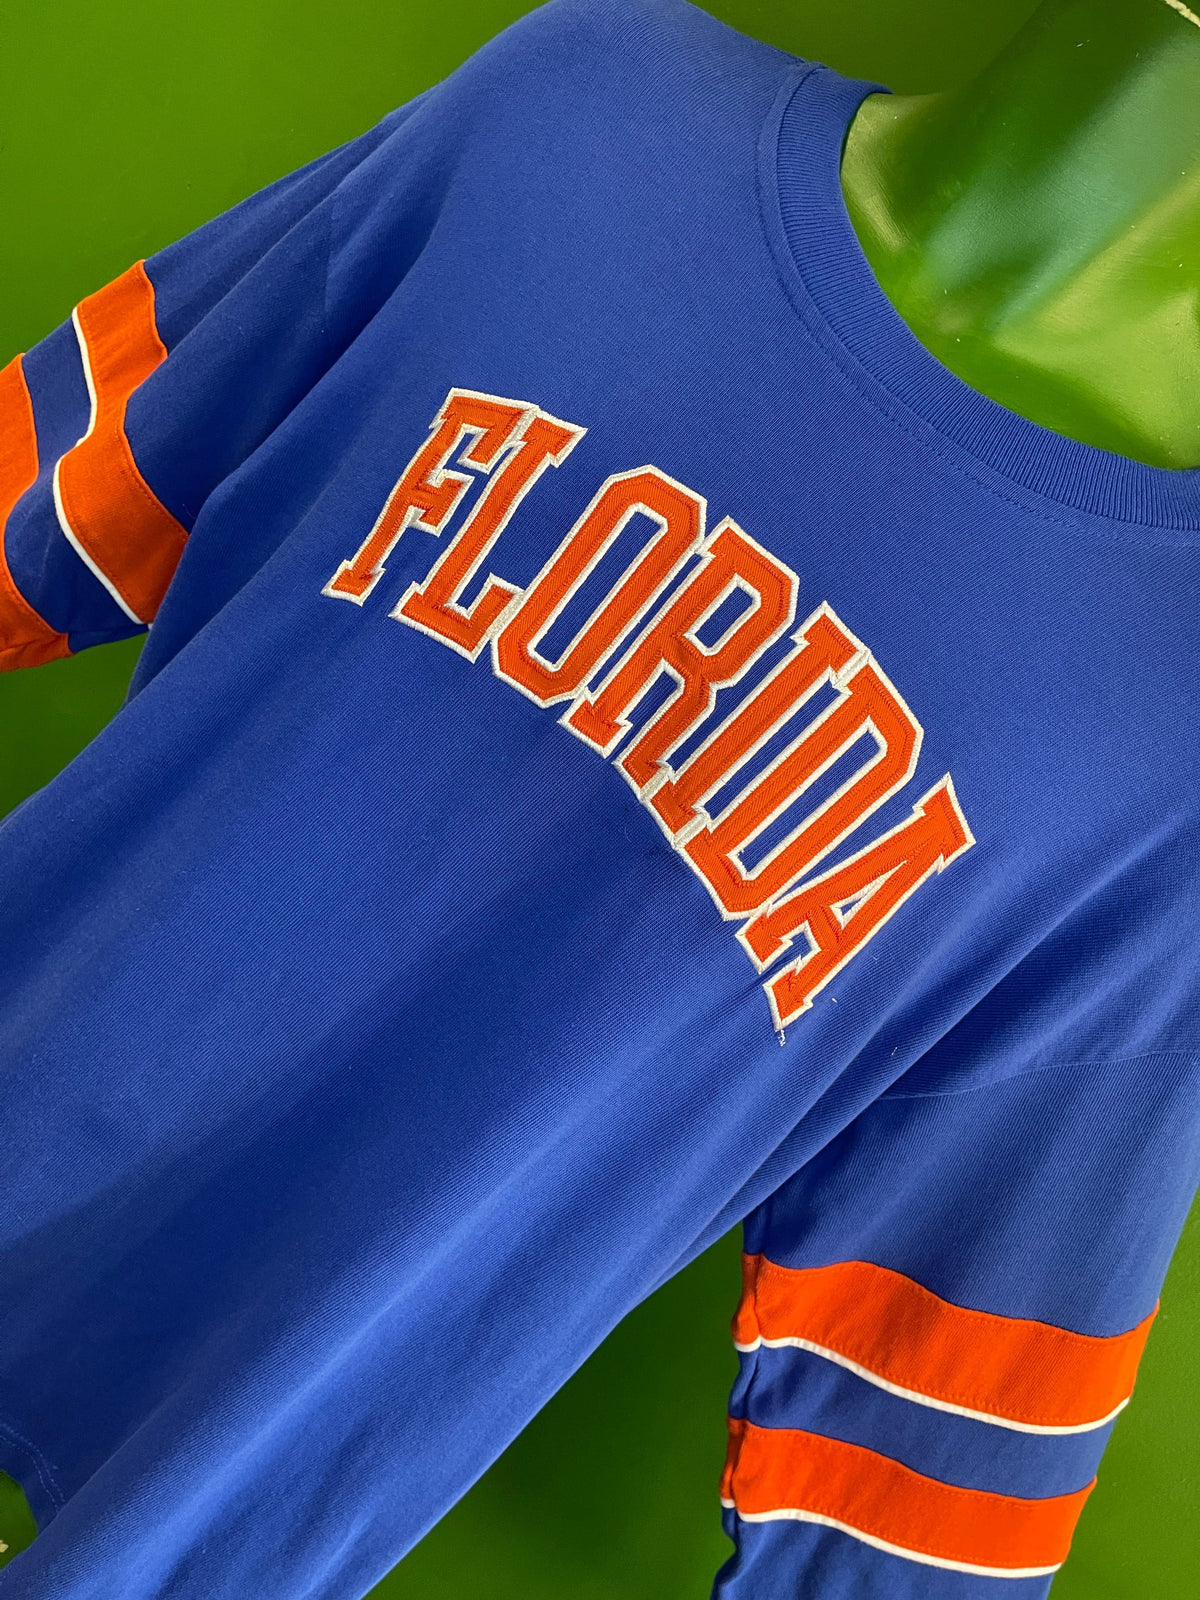 NCAA Florida Gators Pro Edge Stitched Sweatshirt Men's Large